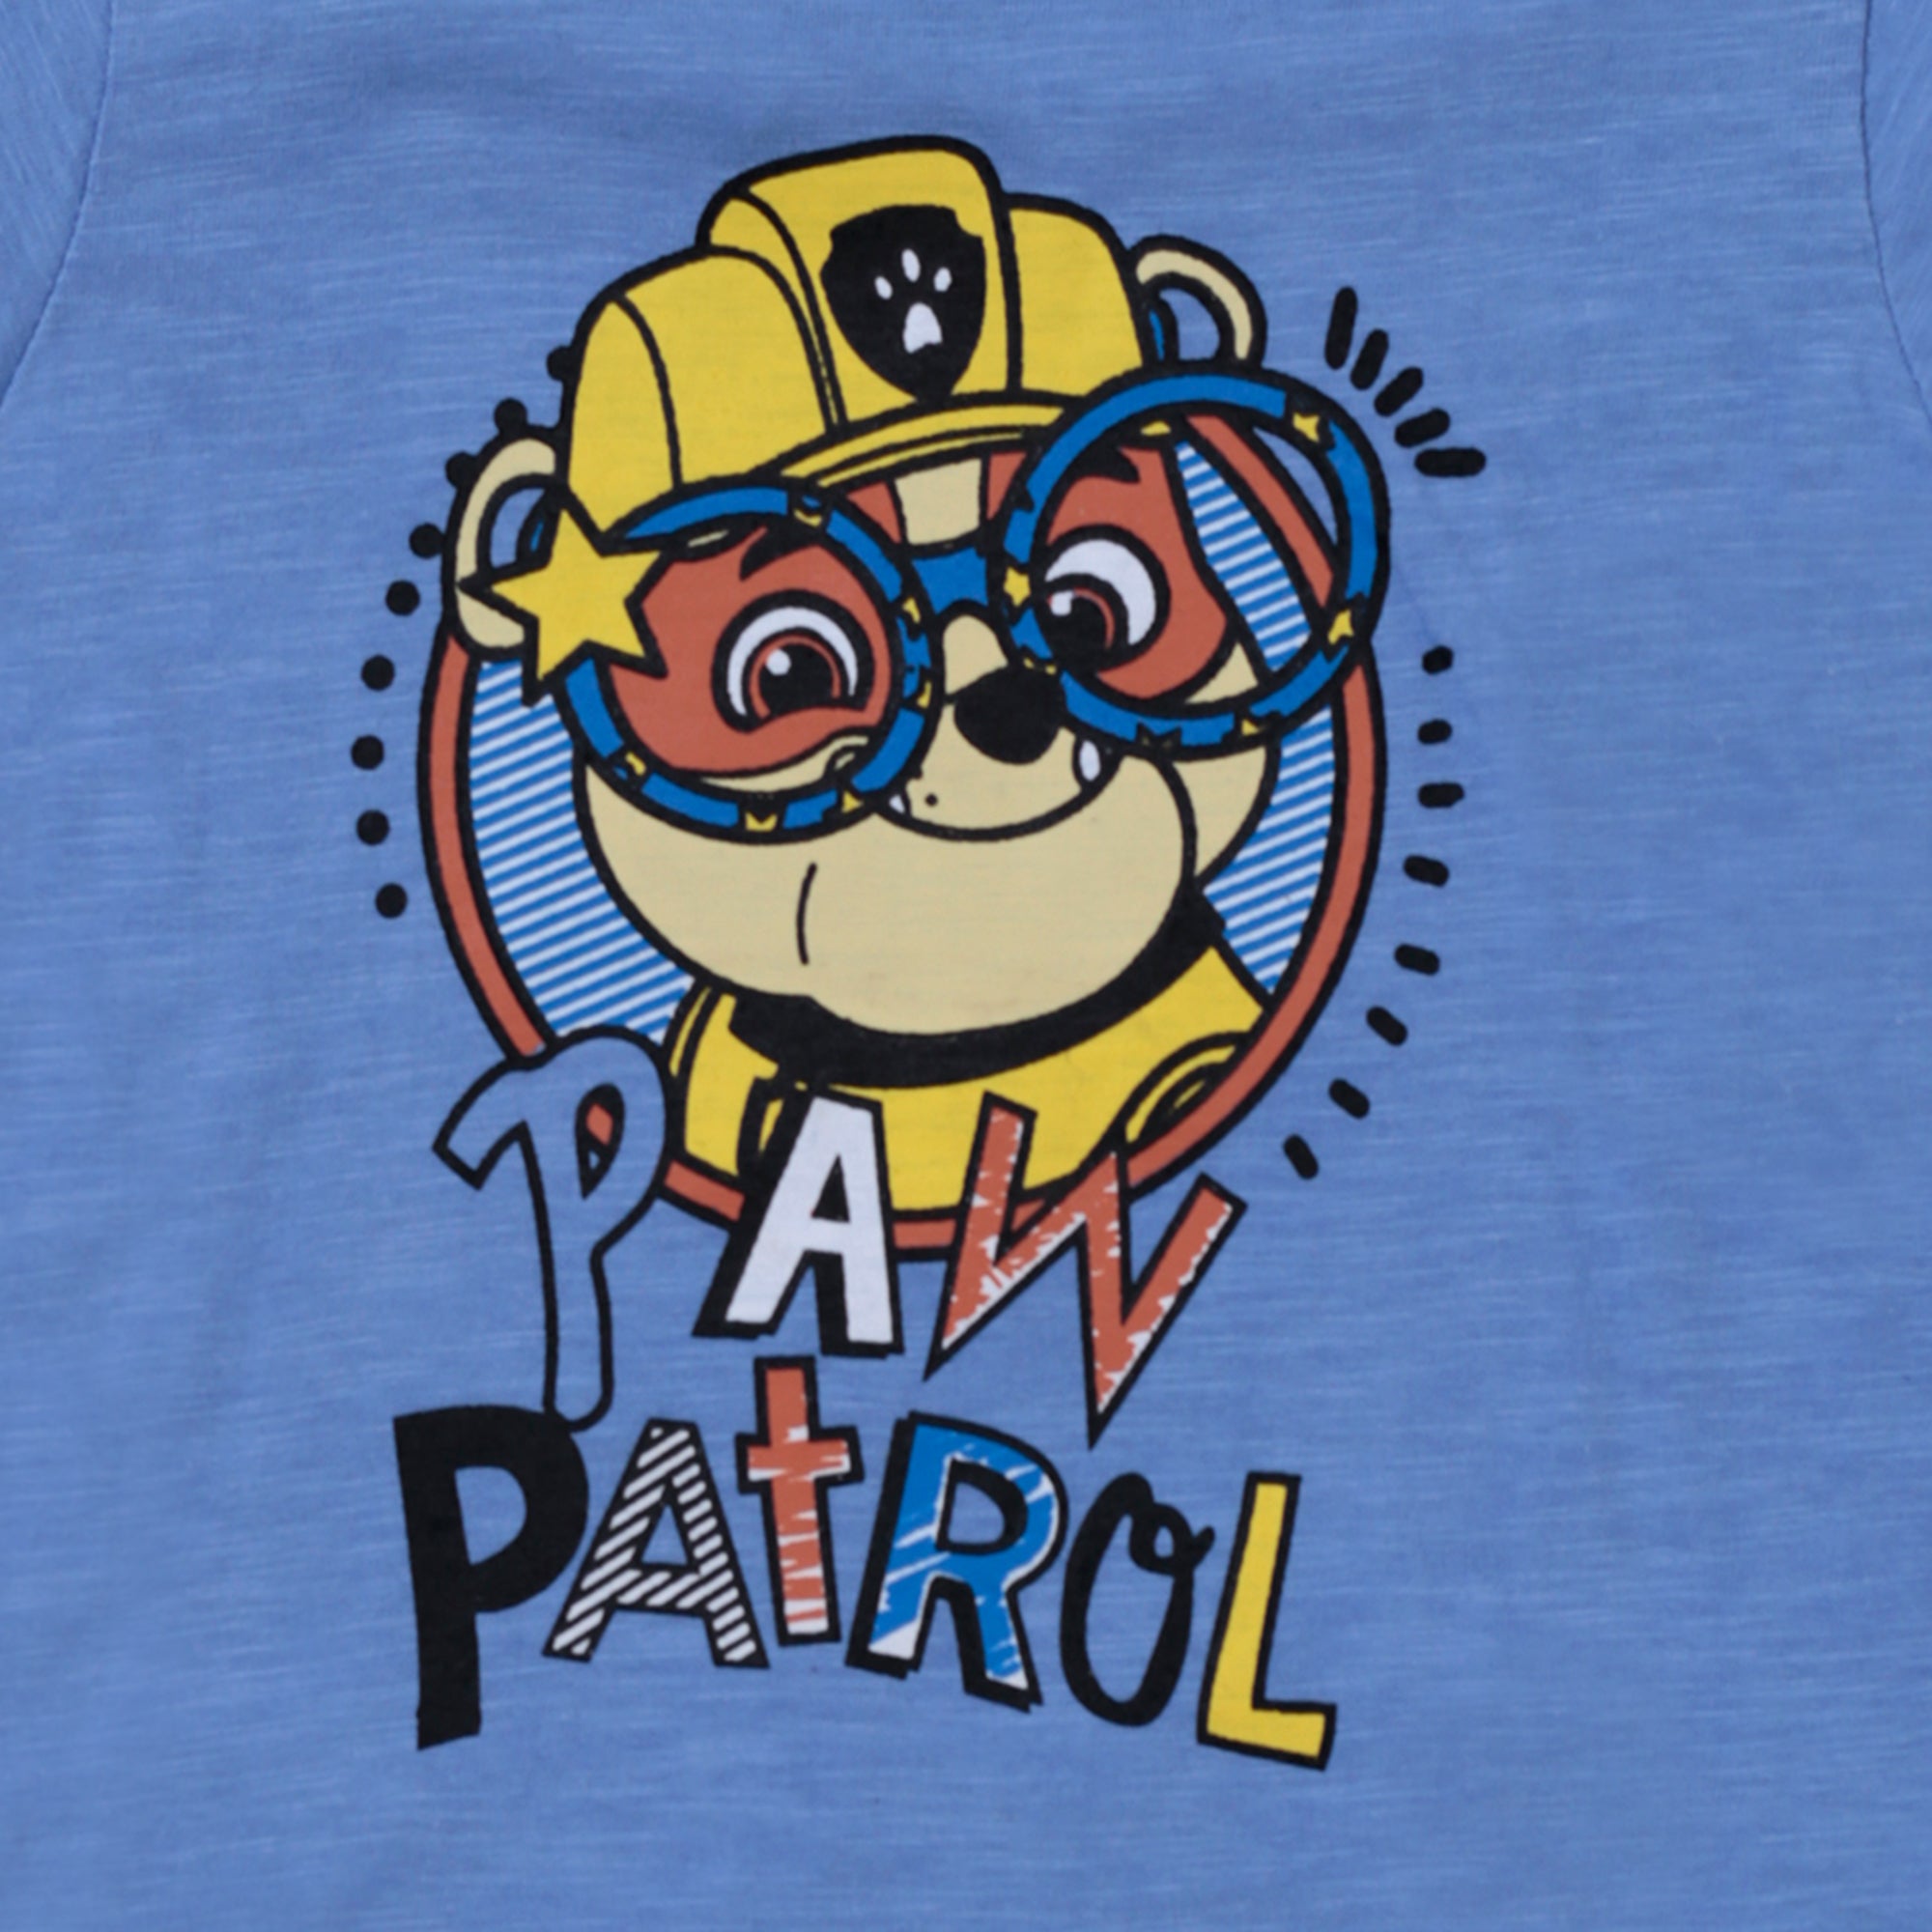 Blue Paw Patrol Graphic T-Shirt